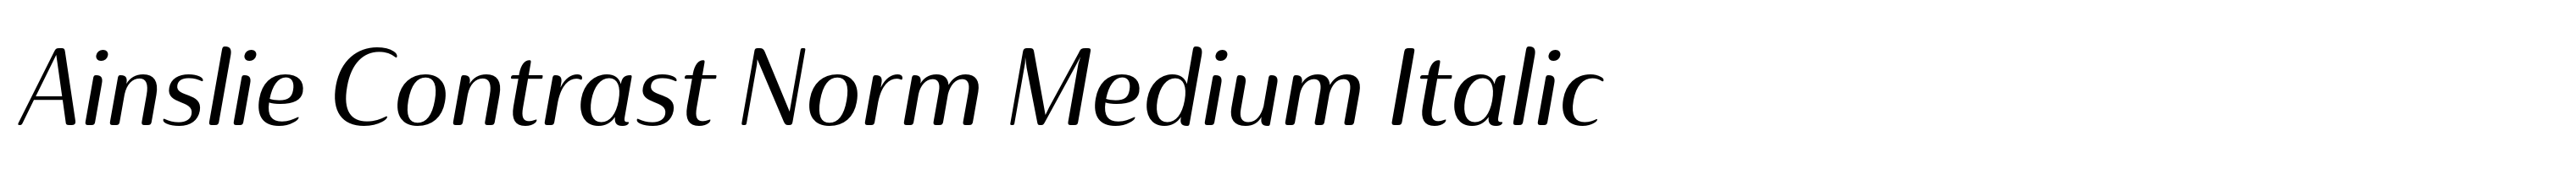 Ainslie Contrast Norm Medium Italic